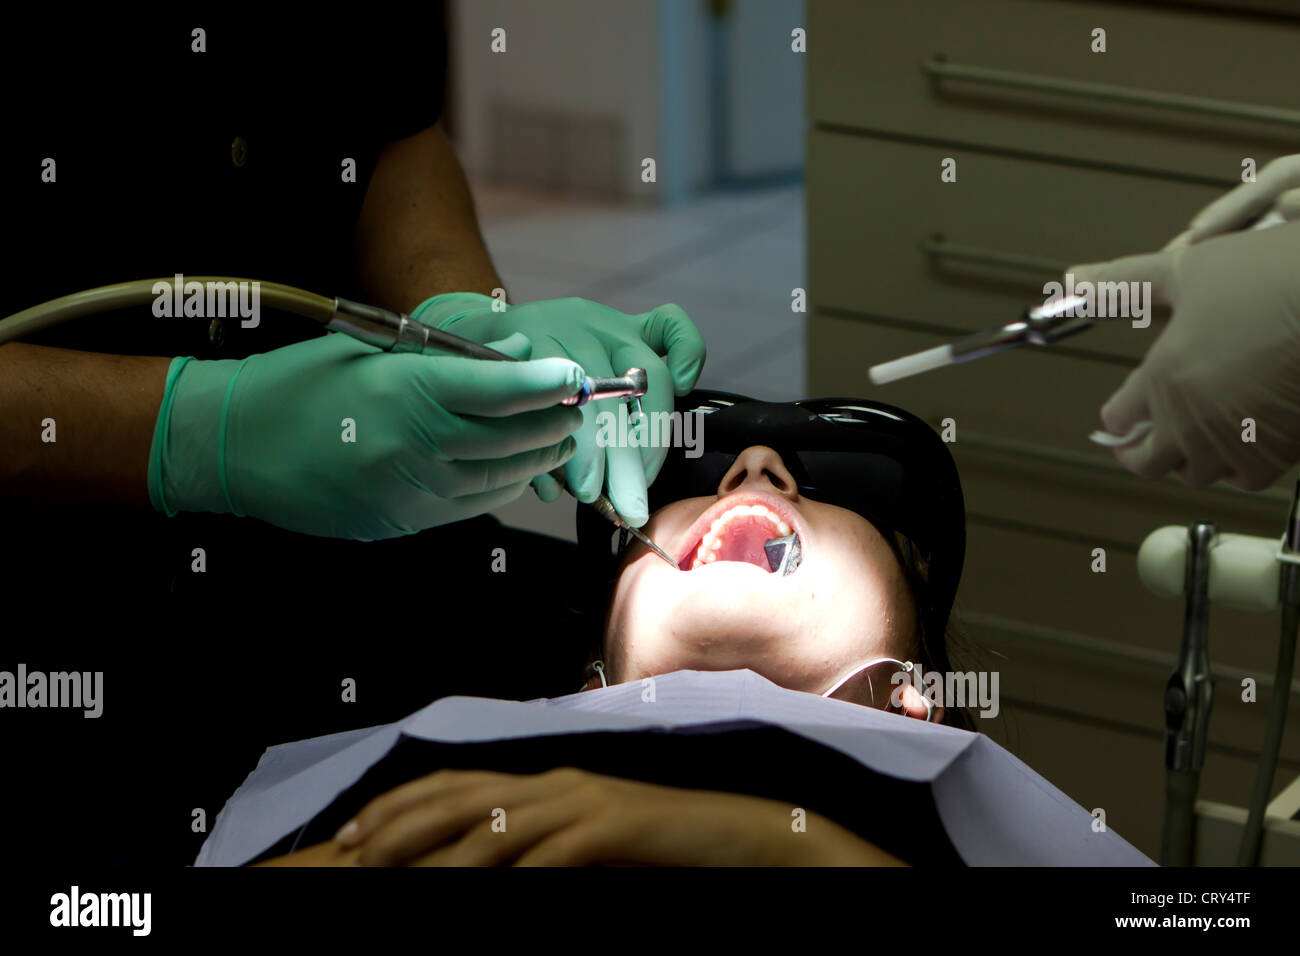 Zahnarzt einen Hohlraum zu behandeln, während der Patient einen Film ist Stockfoto